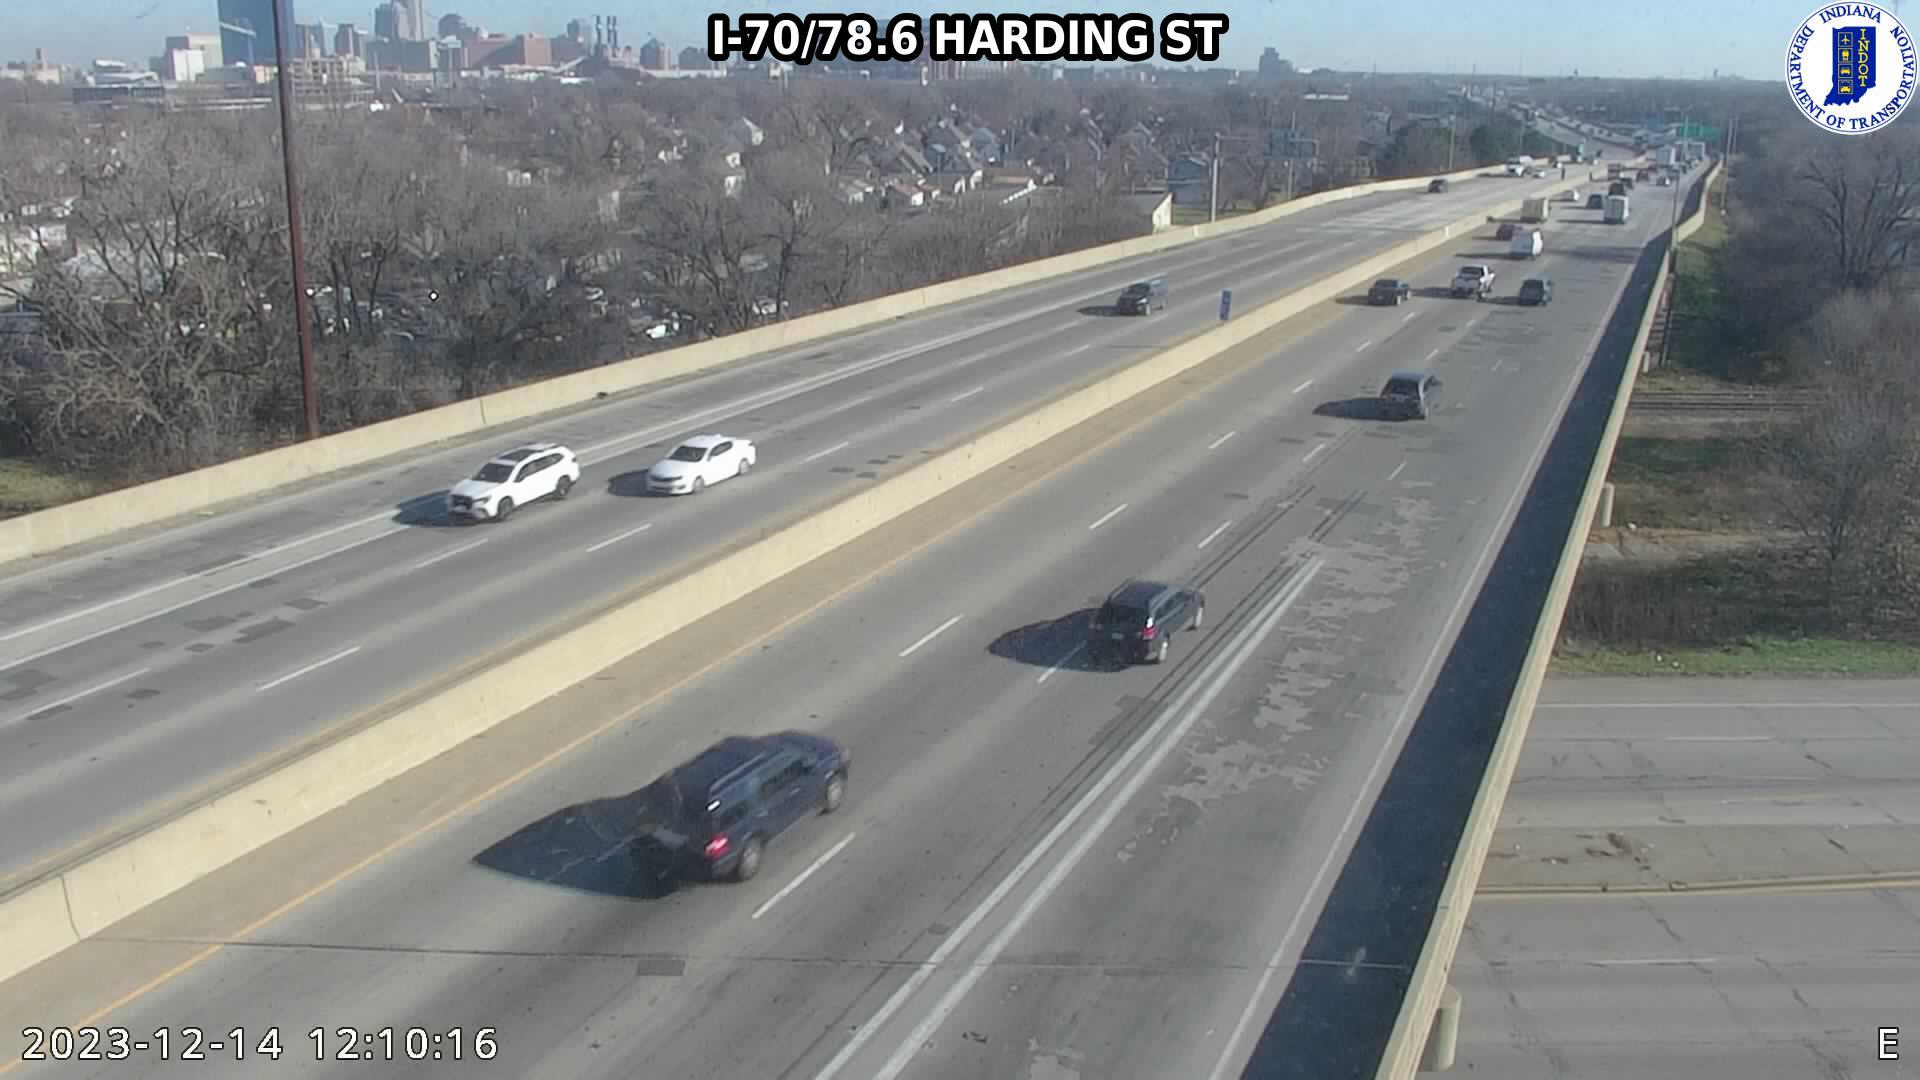 Traffic Cam Indianapolis: I-70: I-70/78.6 HARDING ST